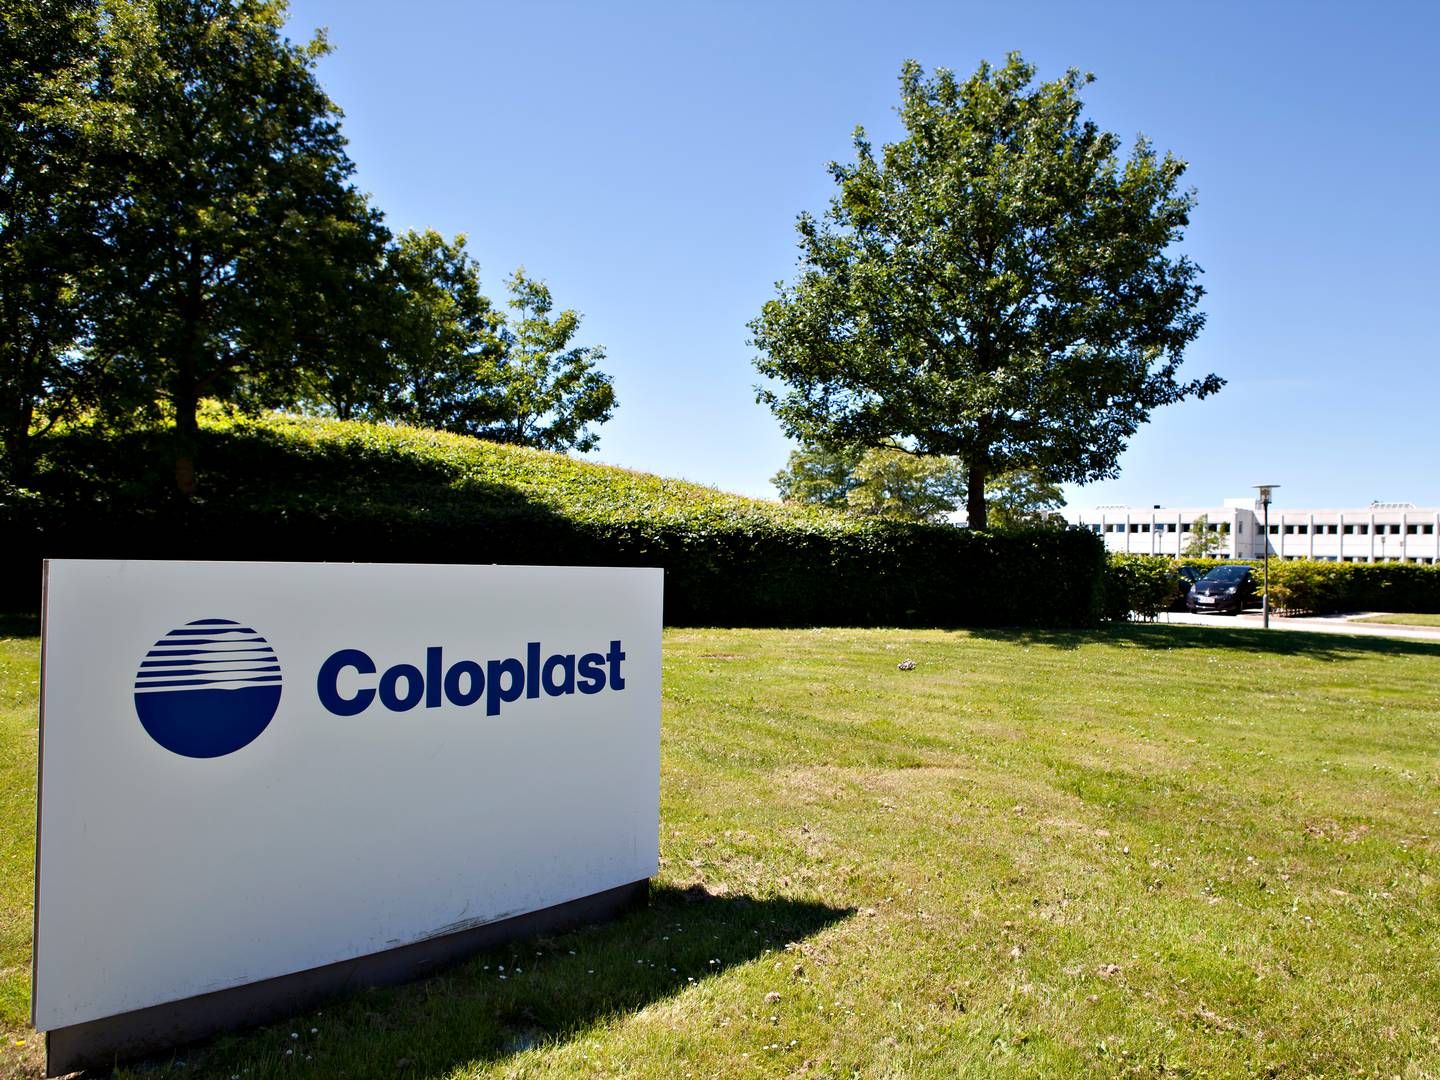 Med lanceringen af en helt ny generation af katetre kan Coloplast erobre nye markedsandele, håber medicoselskabet i Humlebæk. | Foto: Coloplast / Pr